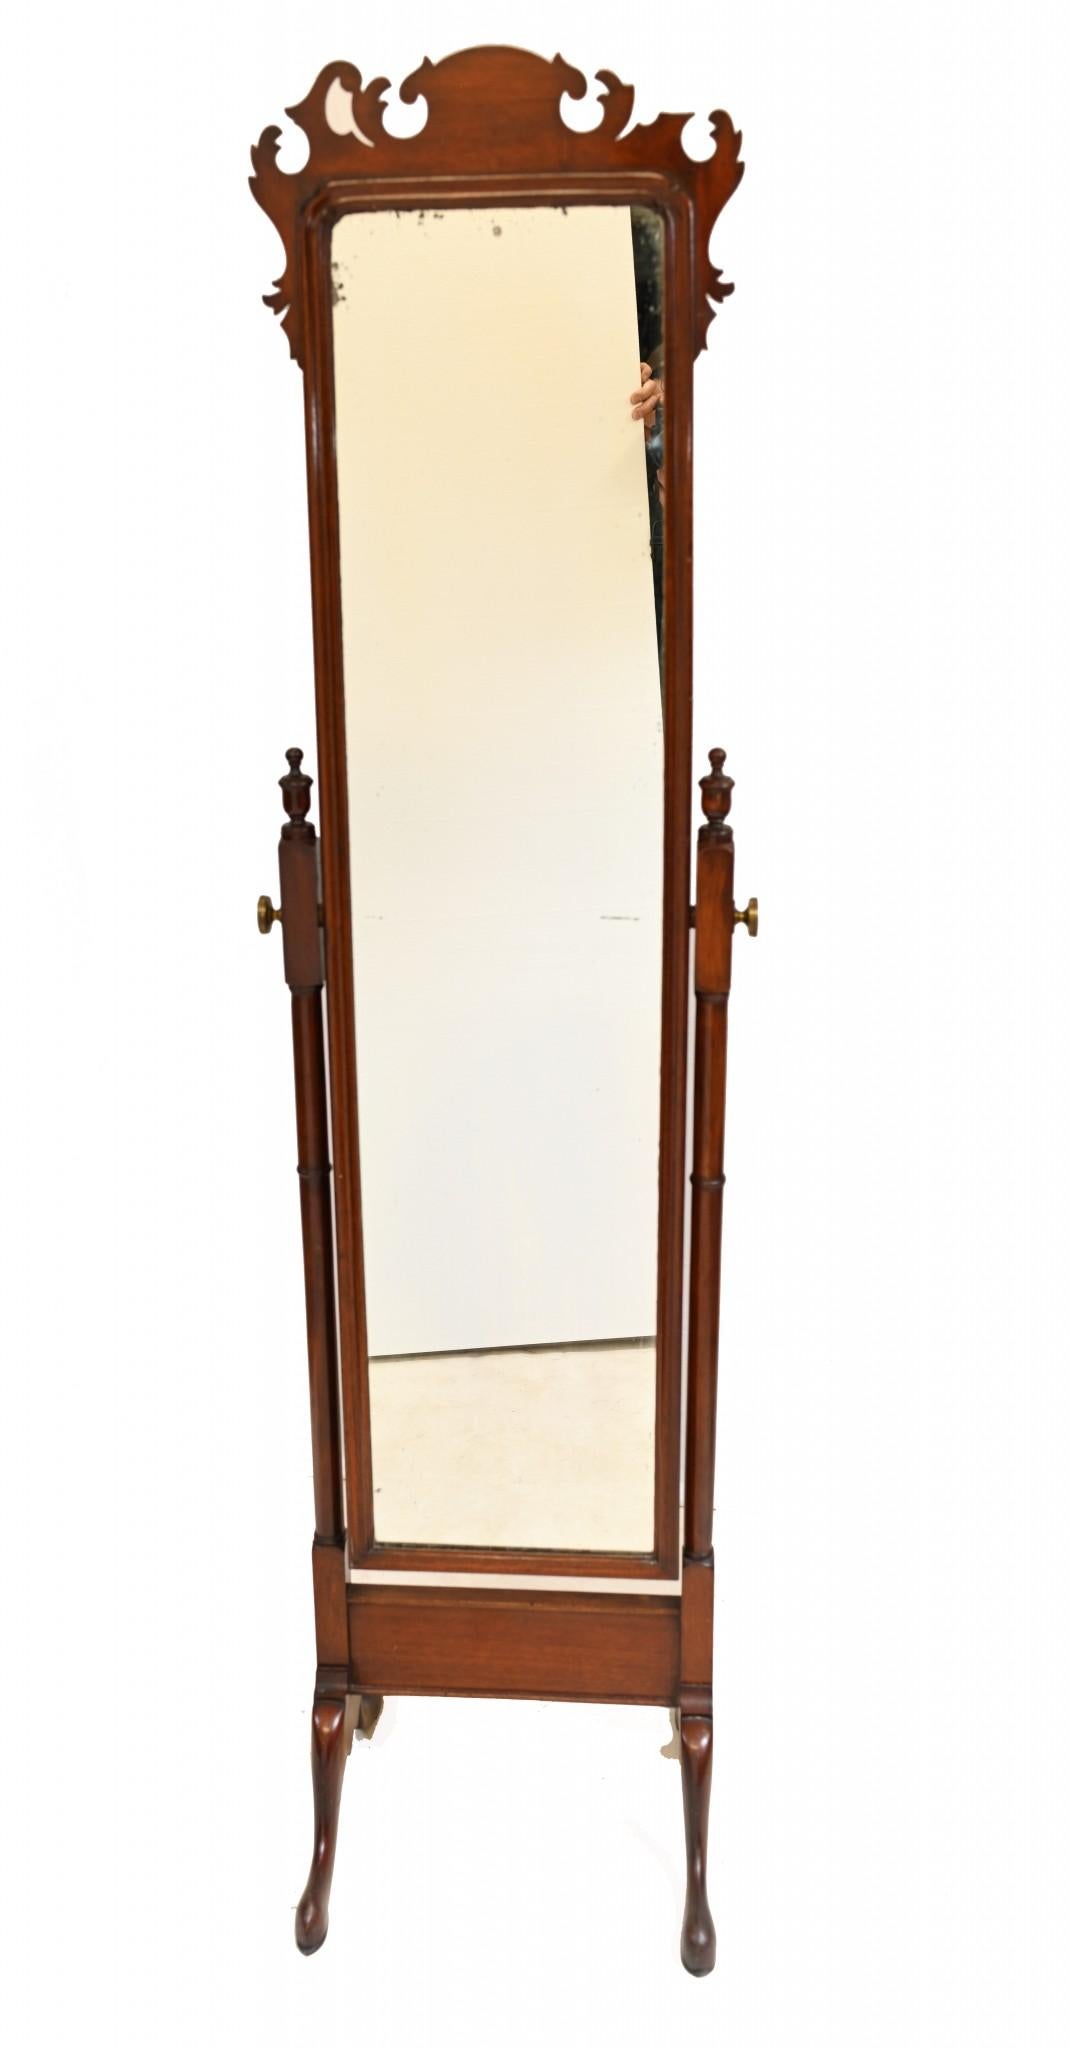 Wunderschöner Mahagoni-Chevalspiegel im georgianischen Stil
Wir datieren dieses skurrile Einrichtungsstück auf ca. 1890
Toller Spiegel in voller Länge, der nicht den ganzen Raum einnimmt, da er recht schmal ist
Angeboten in großer Form bereit für